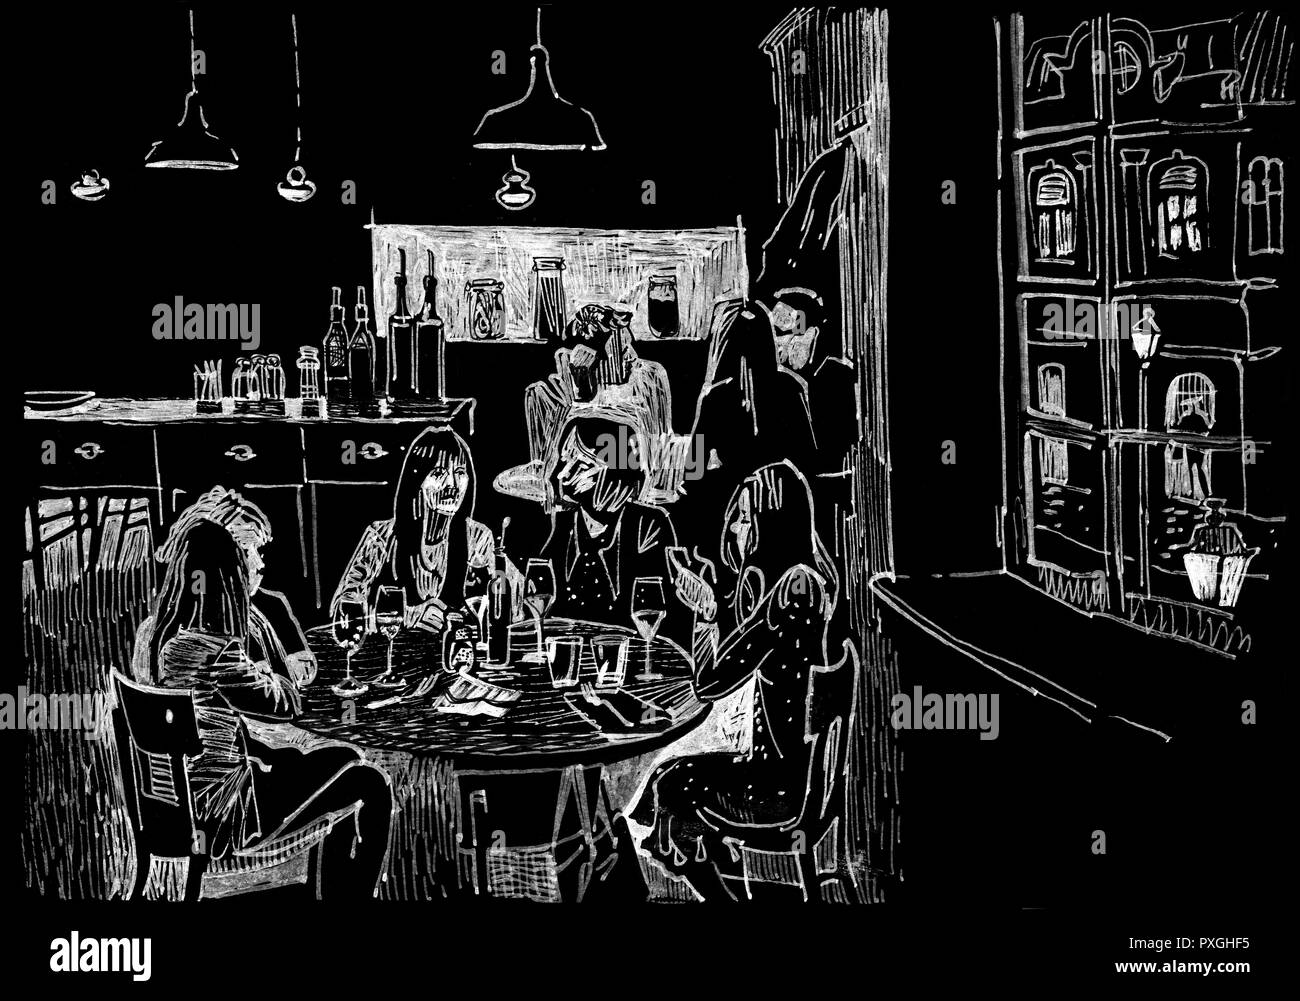 Les gens de dîner dans un restaurant confortable par la fenêtre avec une vue sur la ville de nuit. Hand drawn sketchy stylo encre style illustration blanc sur un background noir Banque D'Images